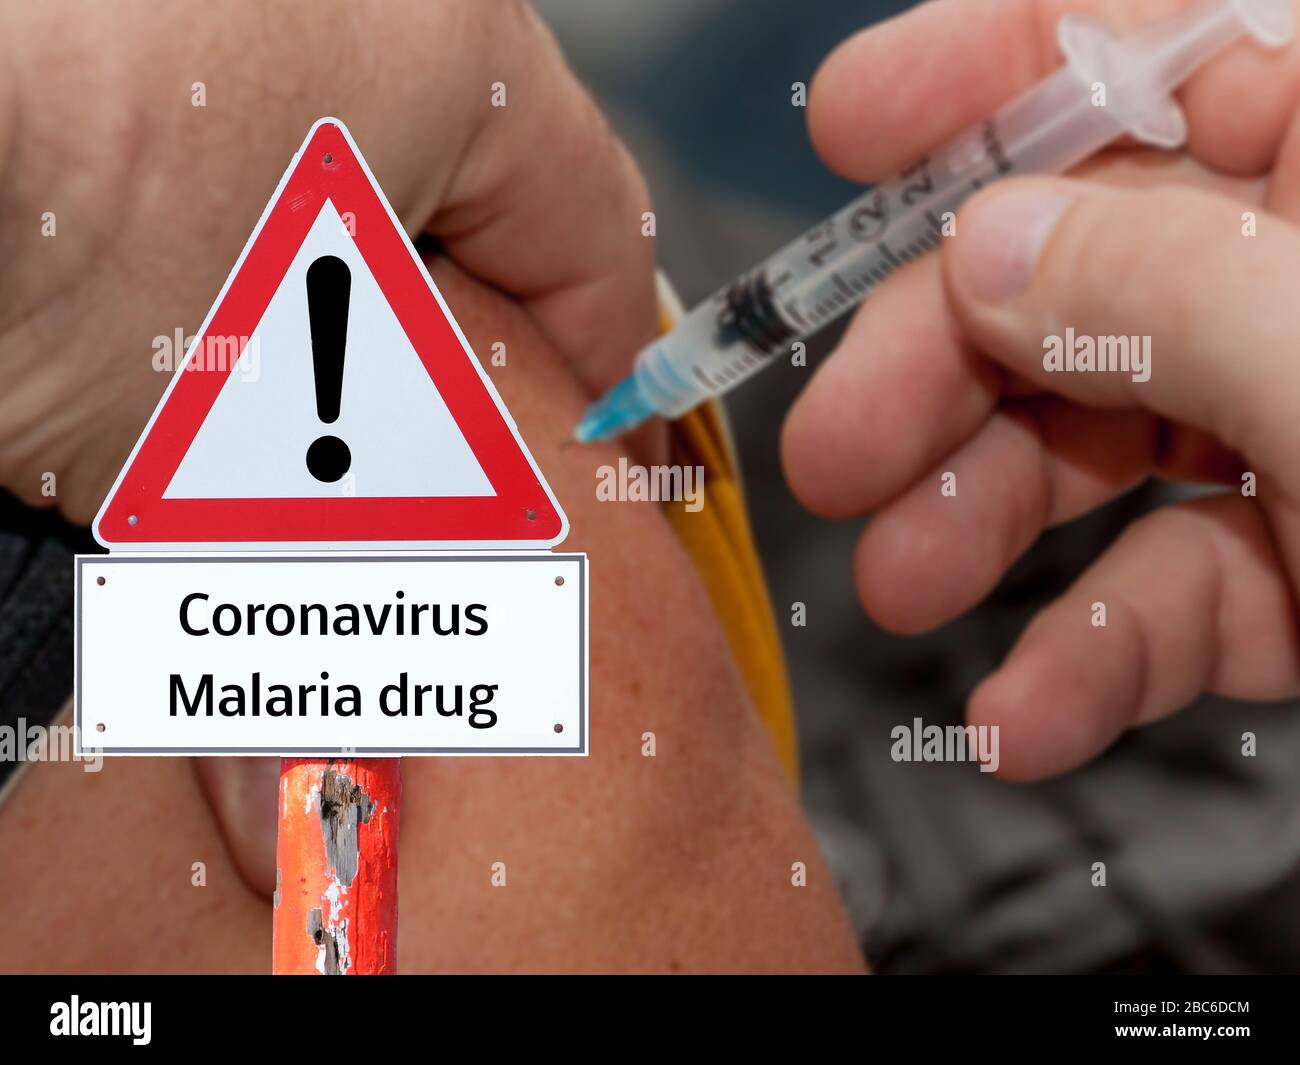 Warning sign Coronavirus malaria drug Stock Photo